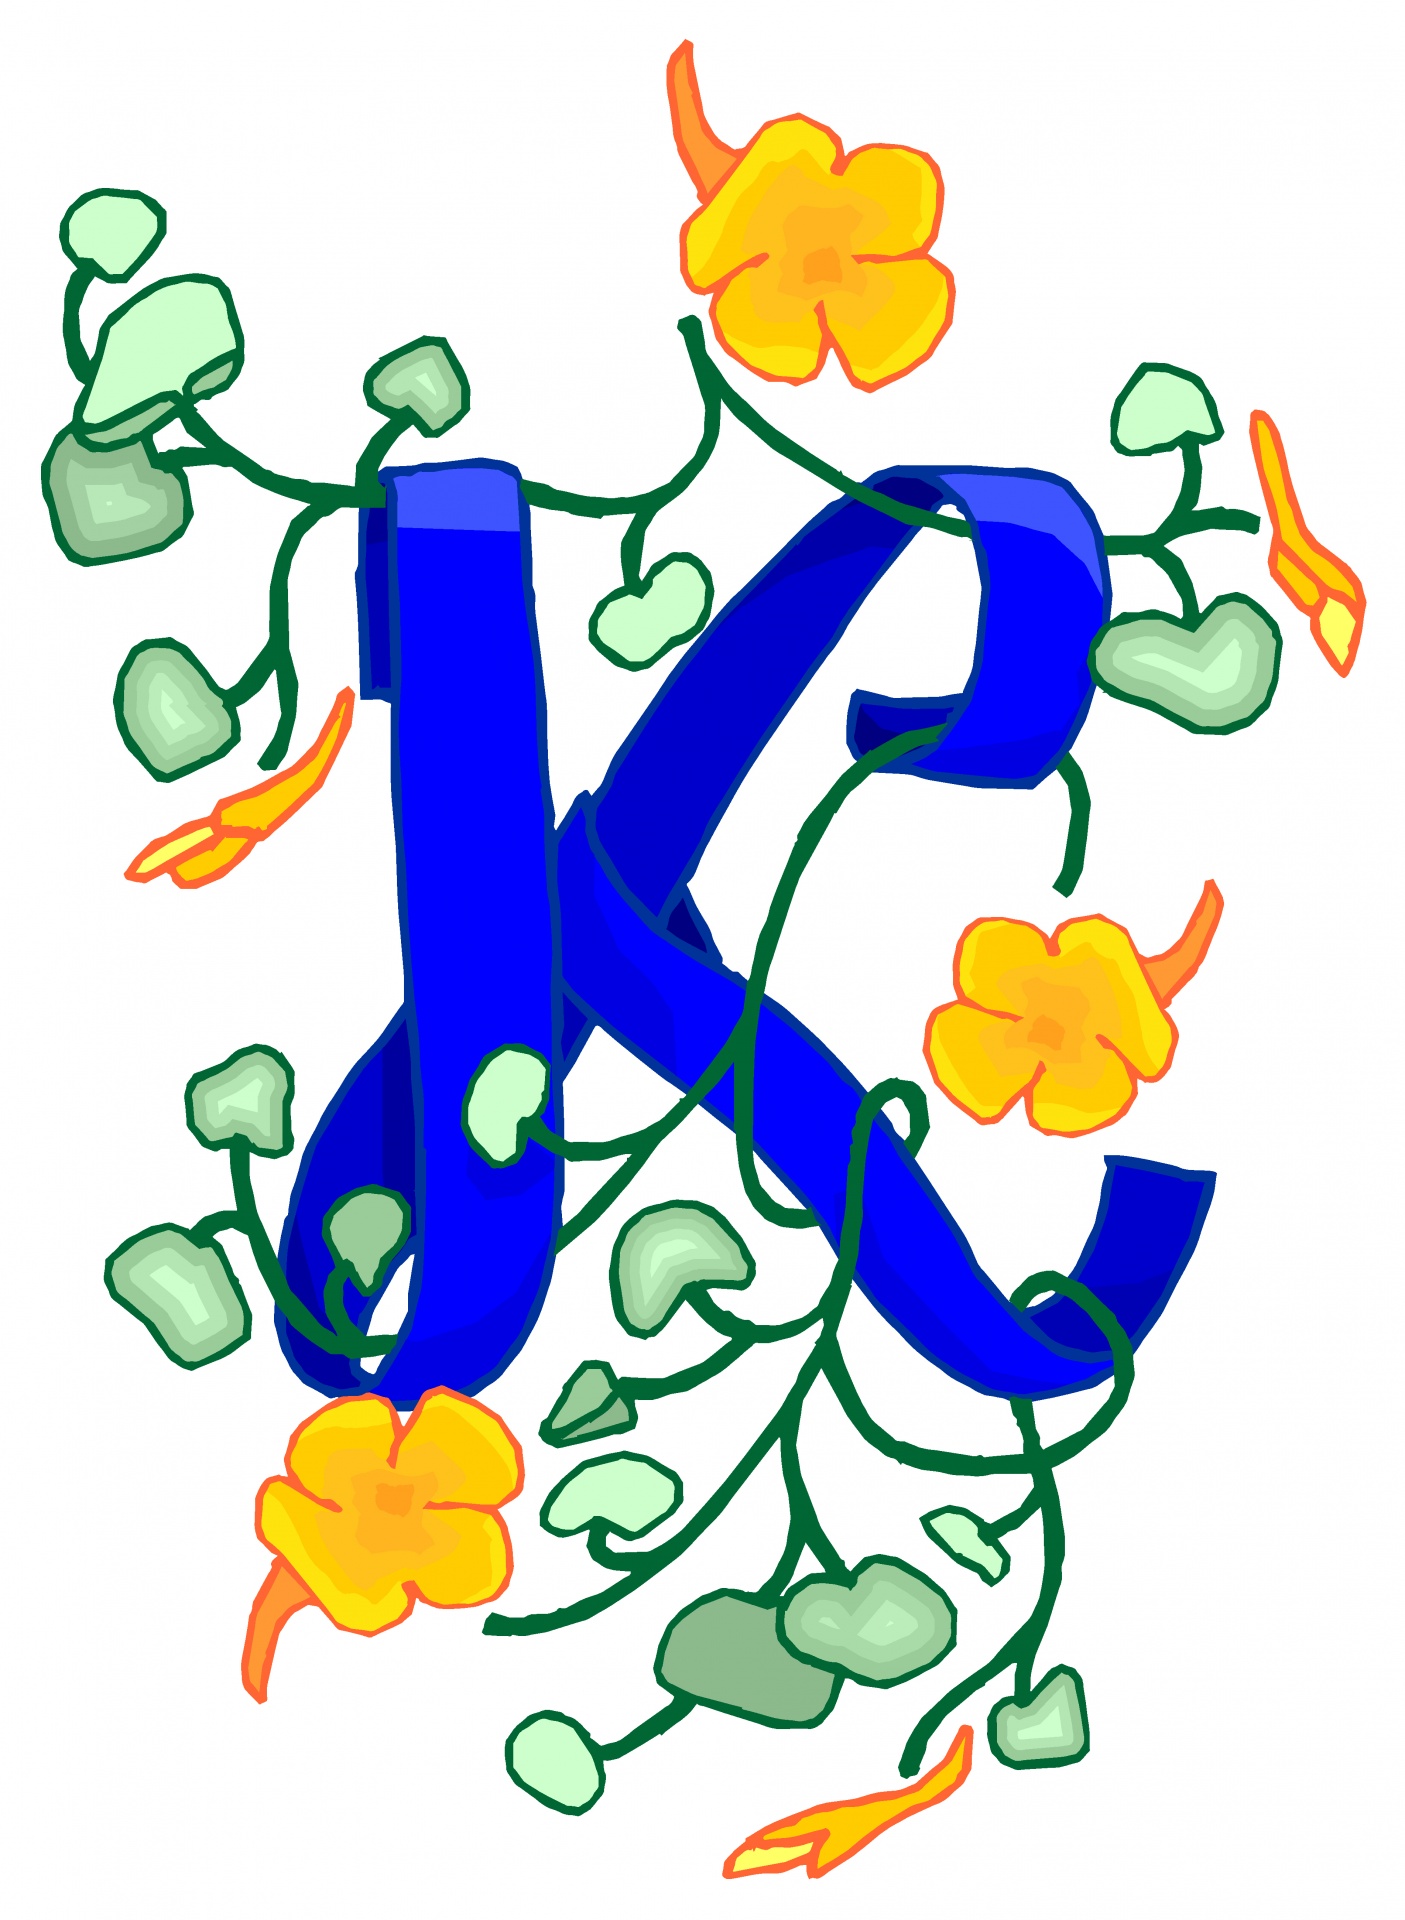 Florido azul da letra K